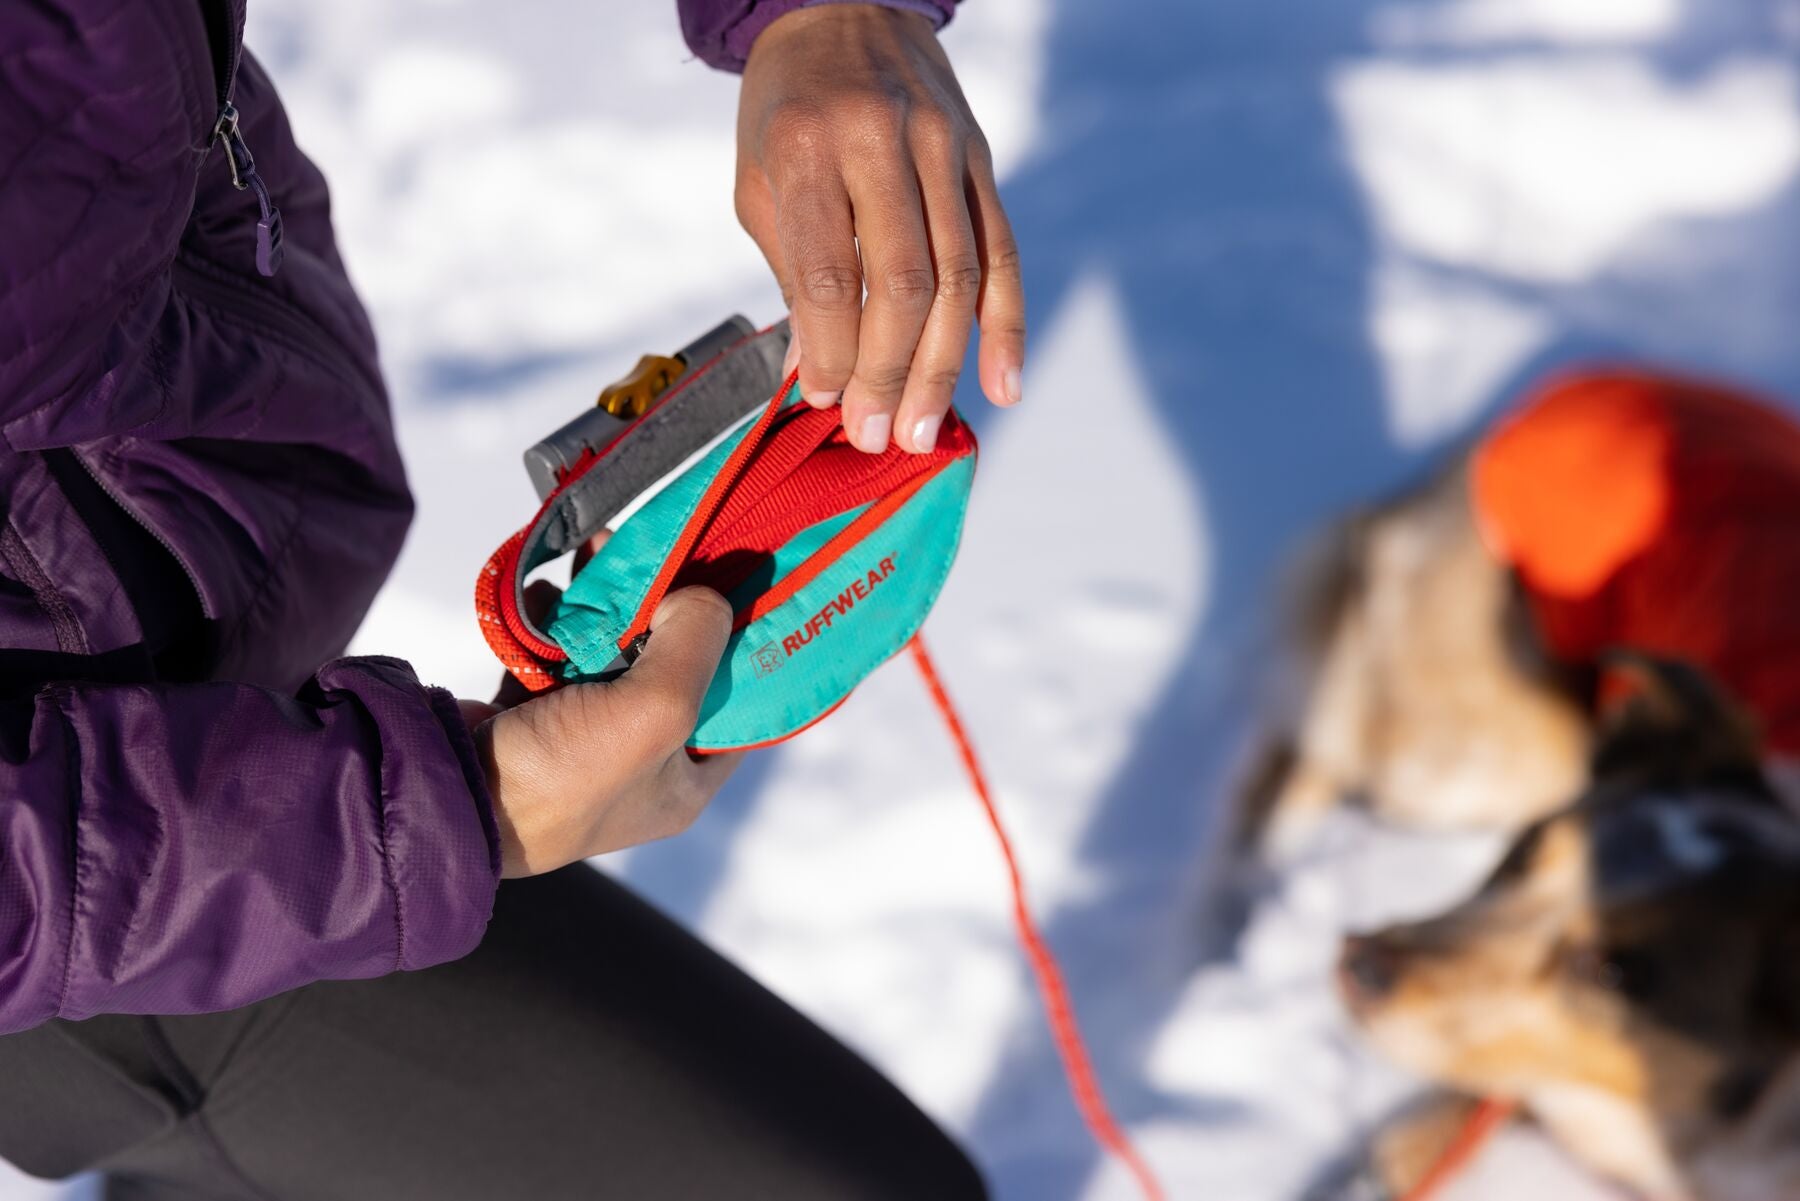 Hitch Hiker® Correa Larga Ajustable en Rojo (Aurora Teal) con Sistema de Bloqueo y Manos Libres - Ruffwear